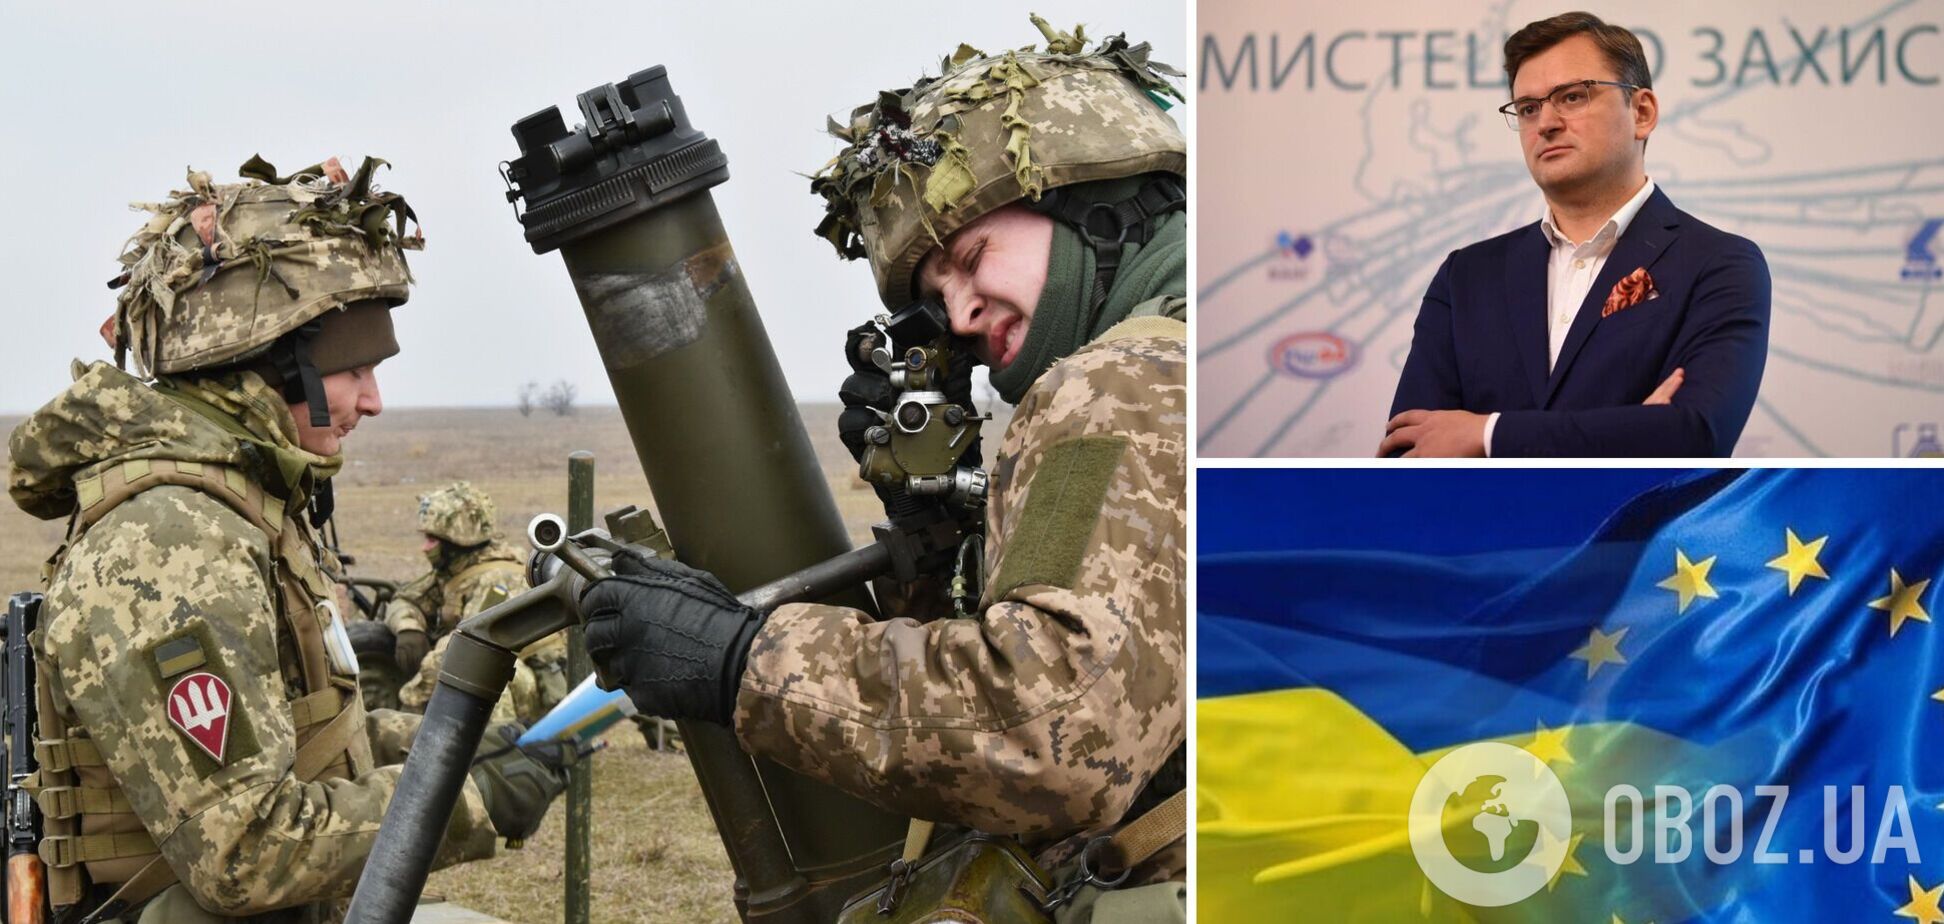 Первые 100 часов обороны: в МИД Украины рассказали об успехах антипутинской коалиции